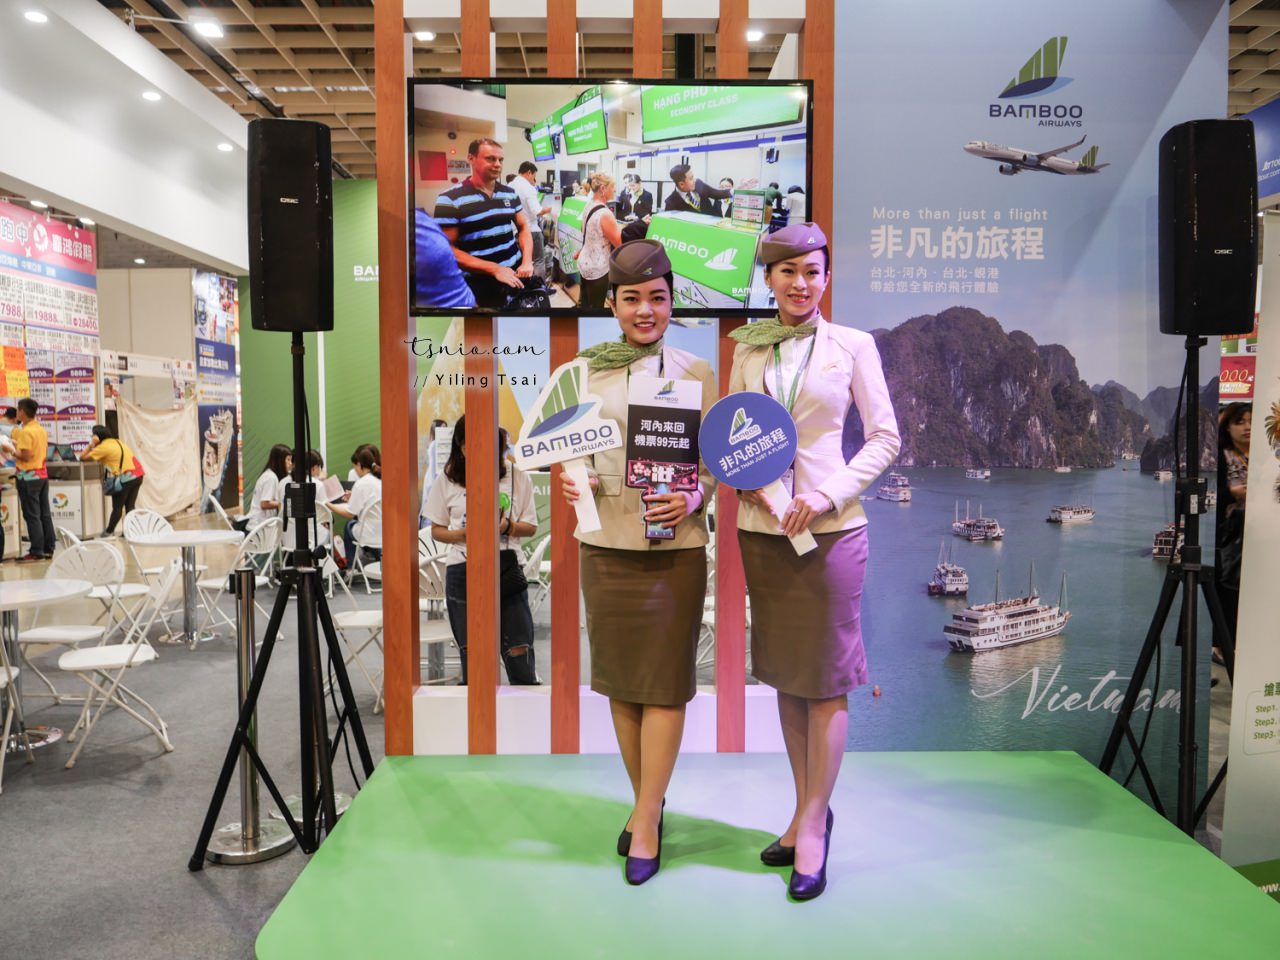 2019 ITF 台北國際旅展 機票旅遊飯店餐券懶人包